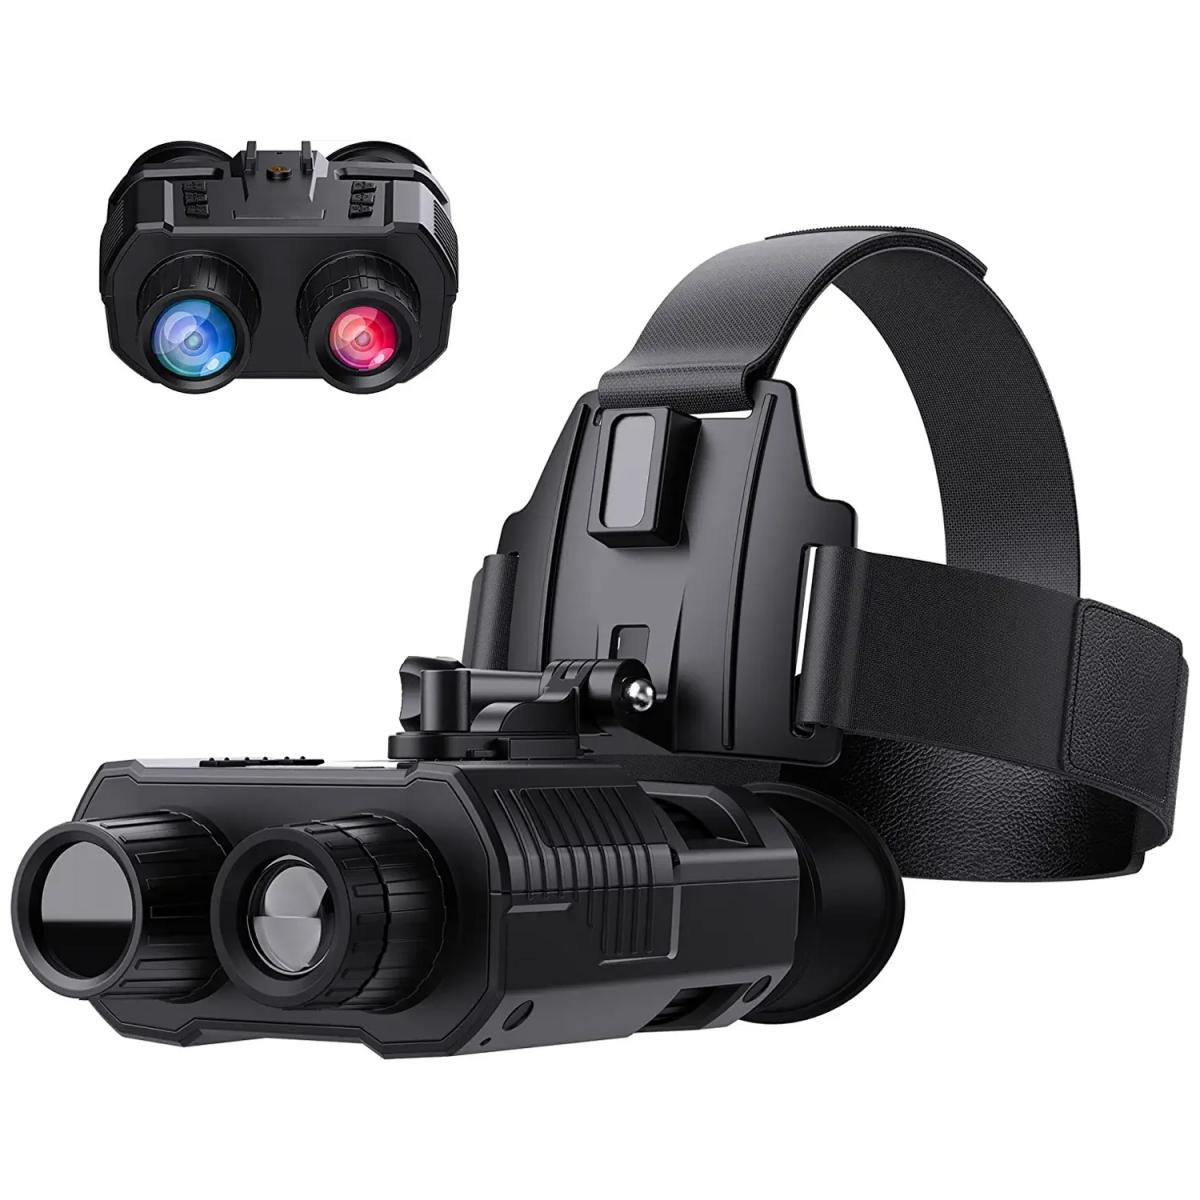 Jumelles de vision nocturne infrarouge NV8300 4K UHD 3D lunettes zoom  numérique 8X 300M